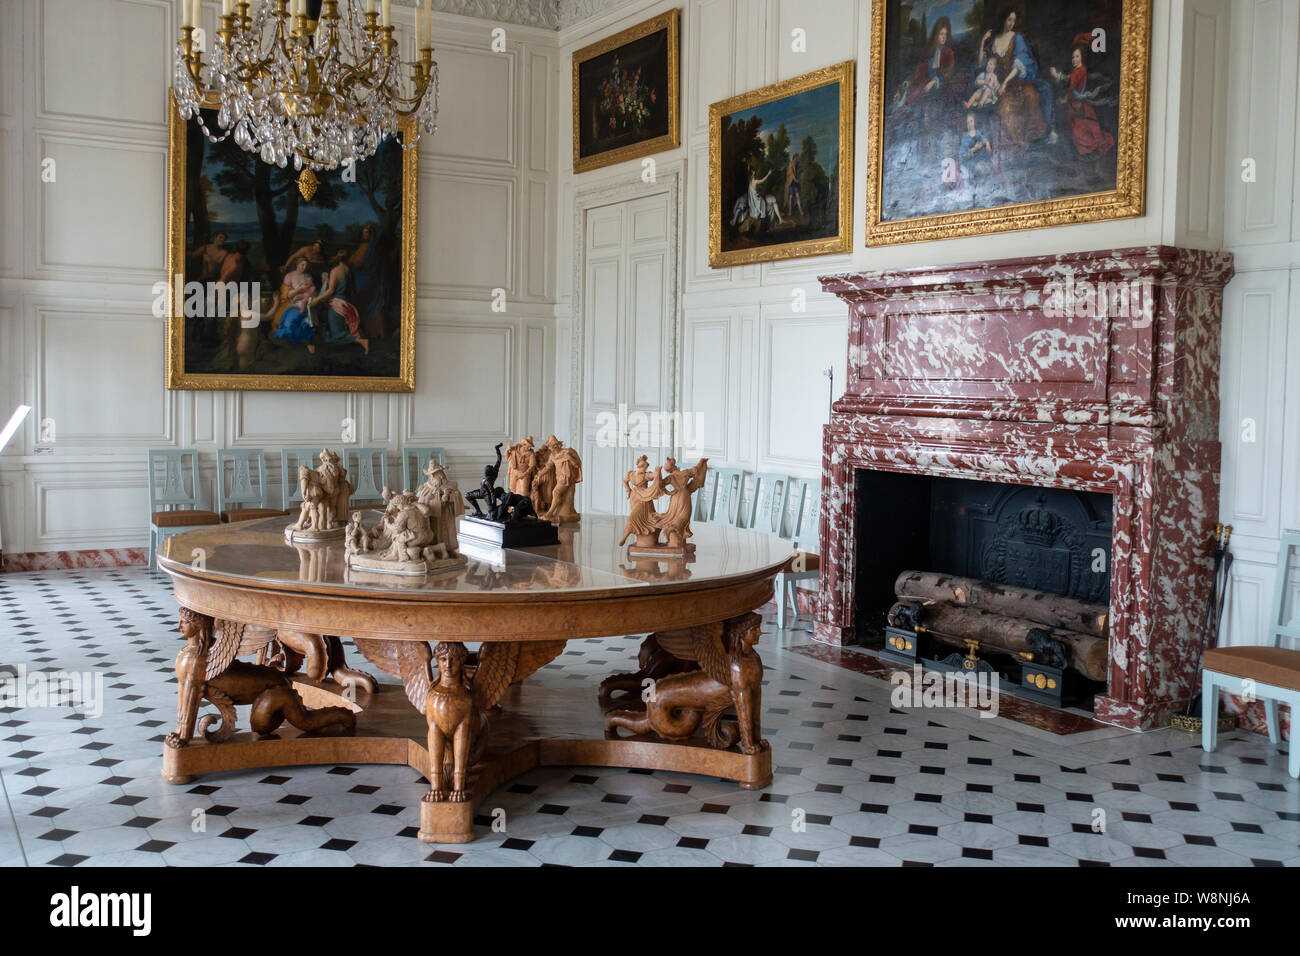 Einer der vielen Salons innerhalb des Grand Trianon Palace - Palast von Versailles Yvelines, Region Île-de-France Frankreich Stockfoto